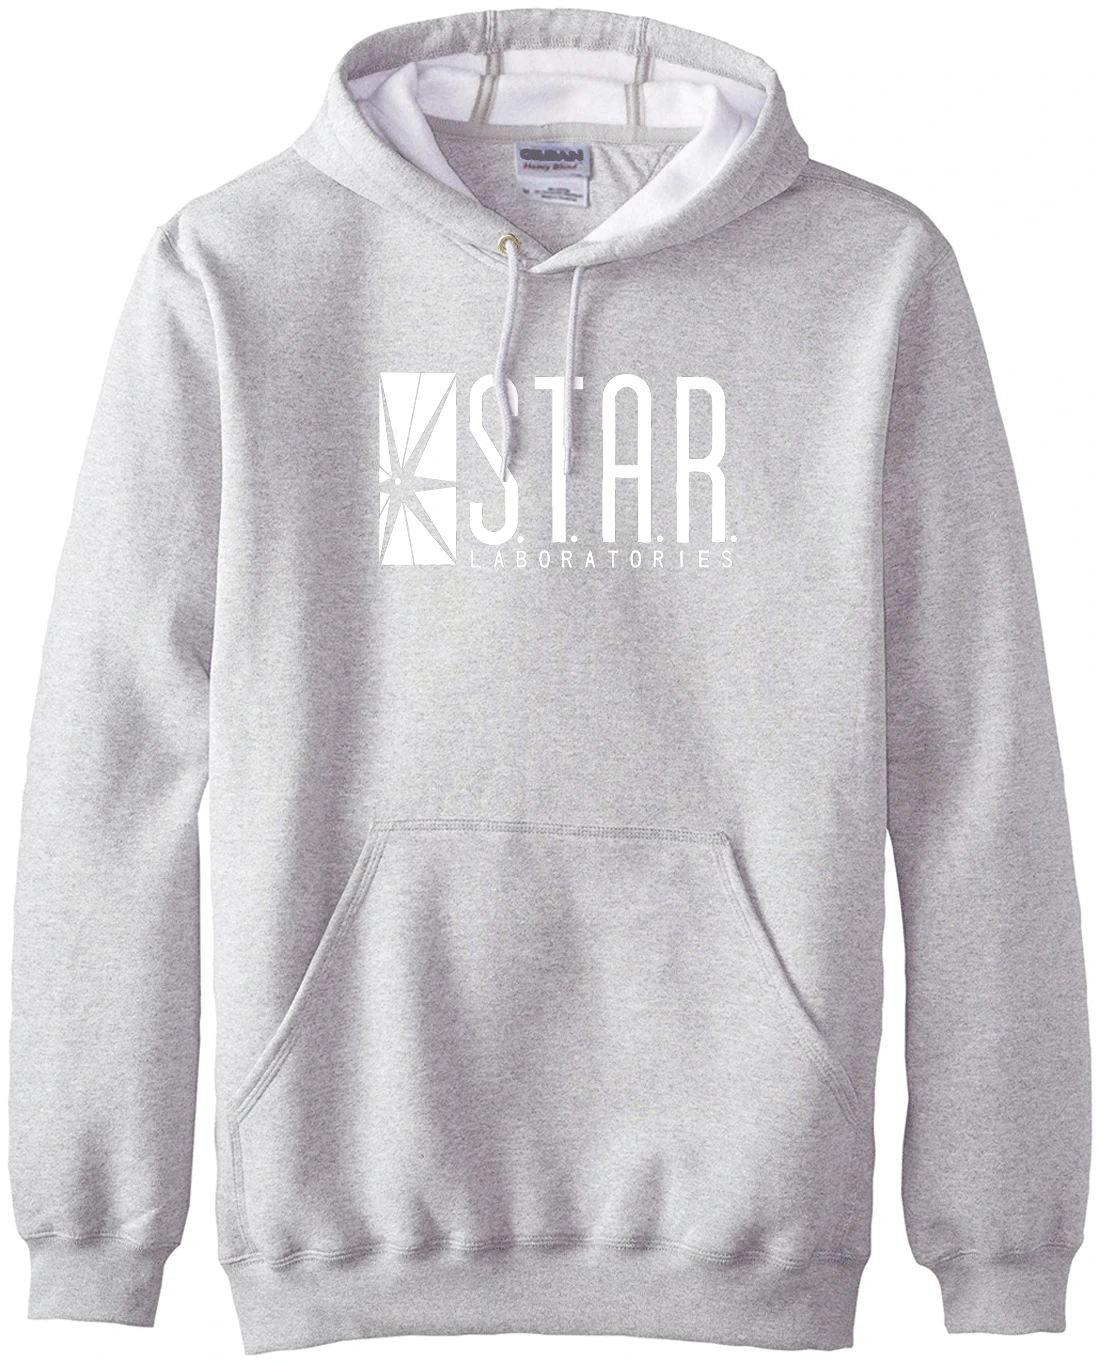 Модная брендовая одежда Звезда S. T. A. R. labs мужские толстовки с капюшоном осень зима теплая флисовая Высококачественная Мужская S-2XL с капюшоном - Цвет: Серый